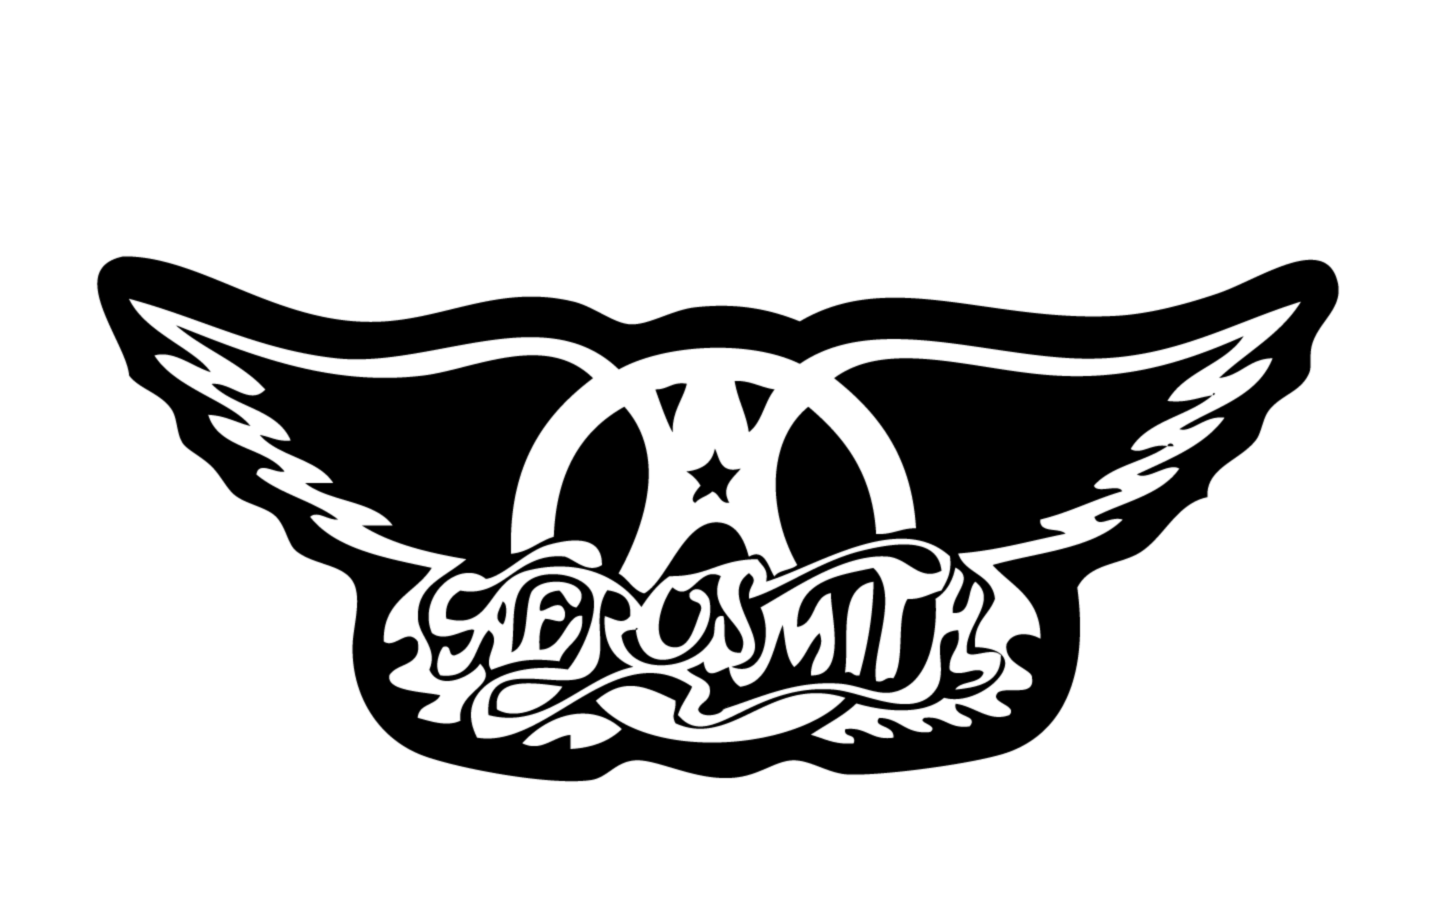 Aerosmith Record Logo Vector PNG - 35380